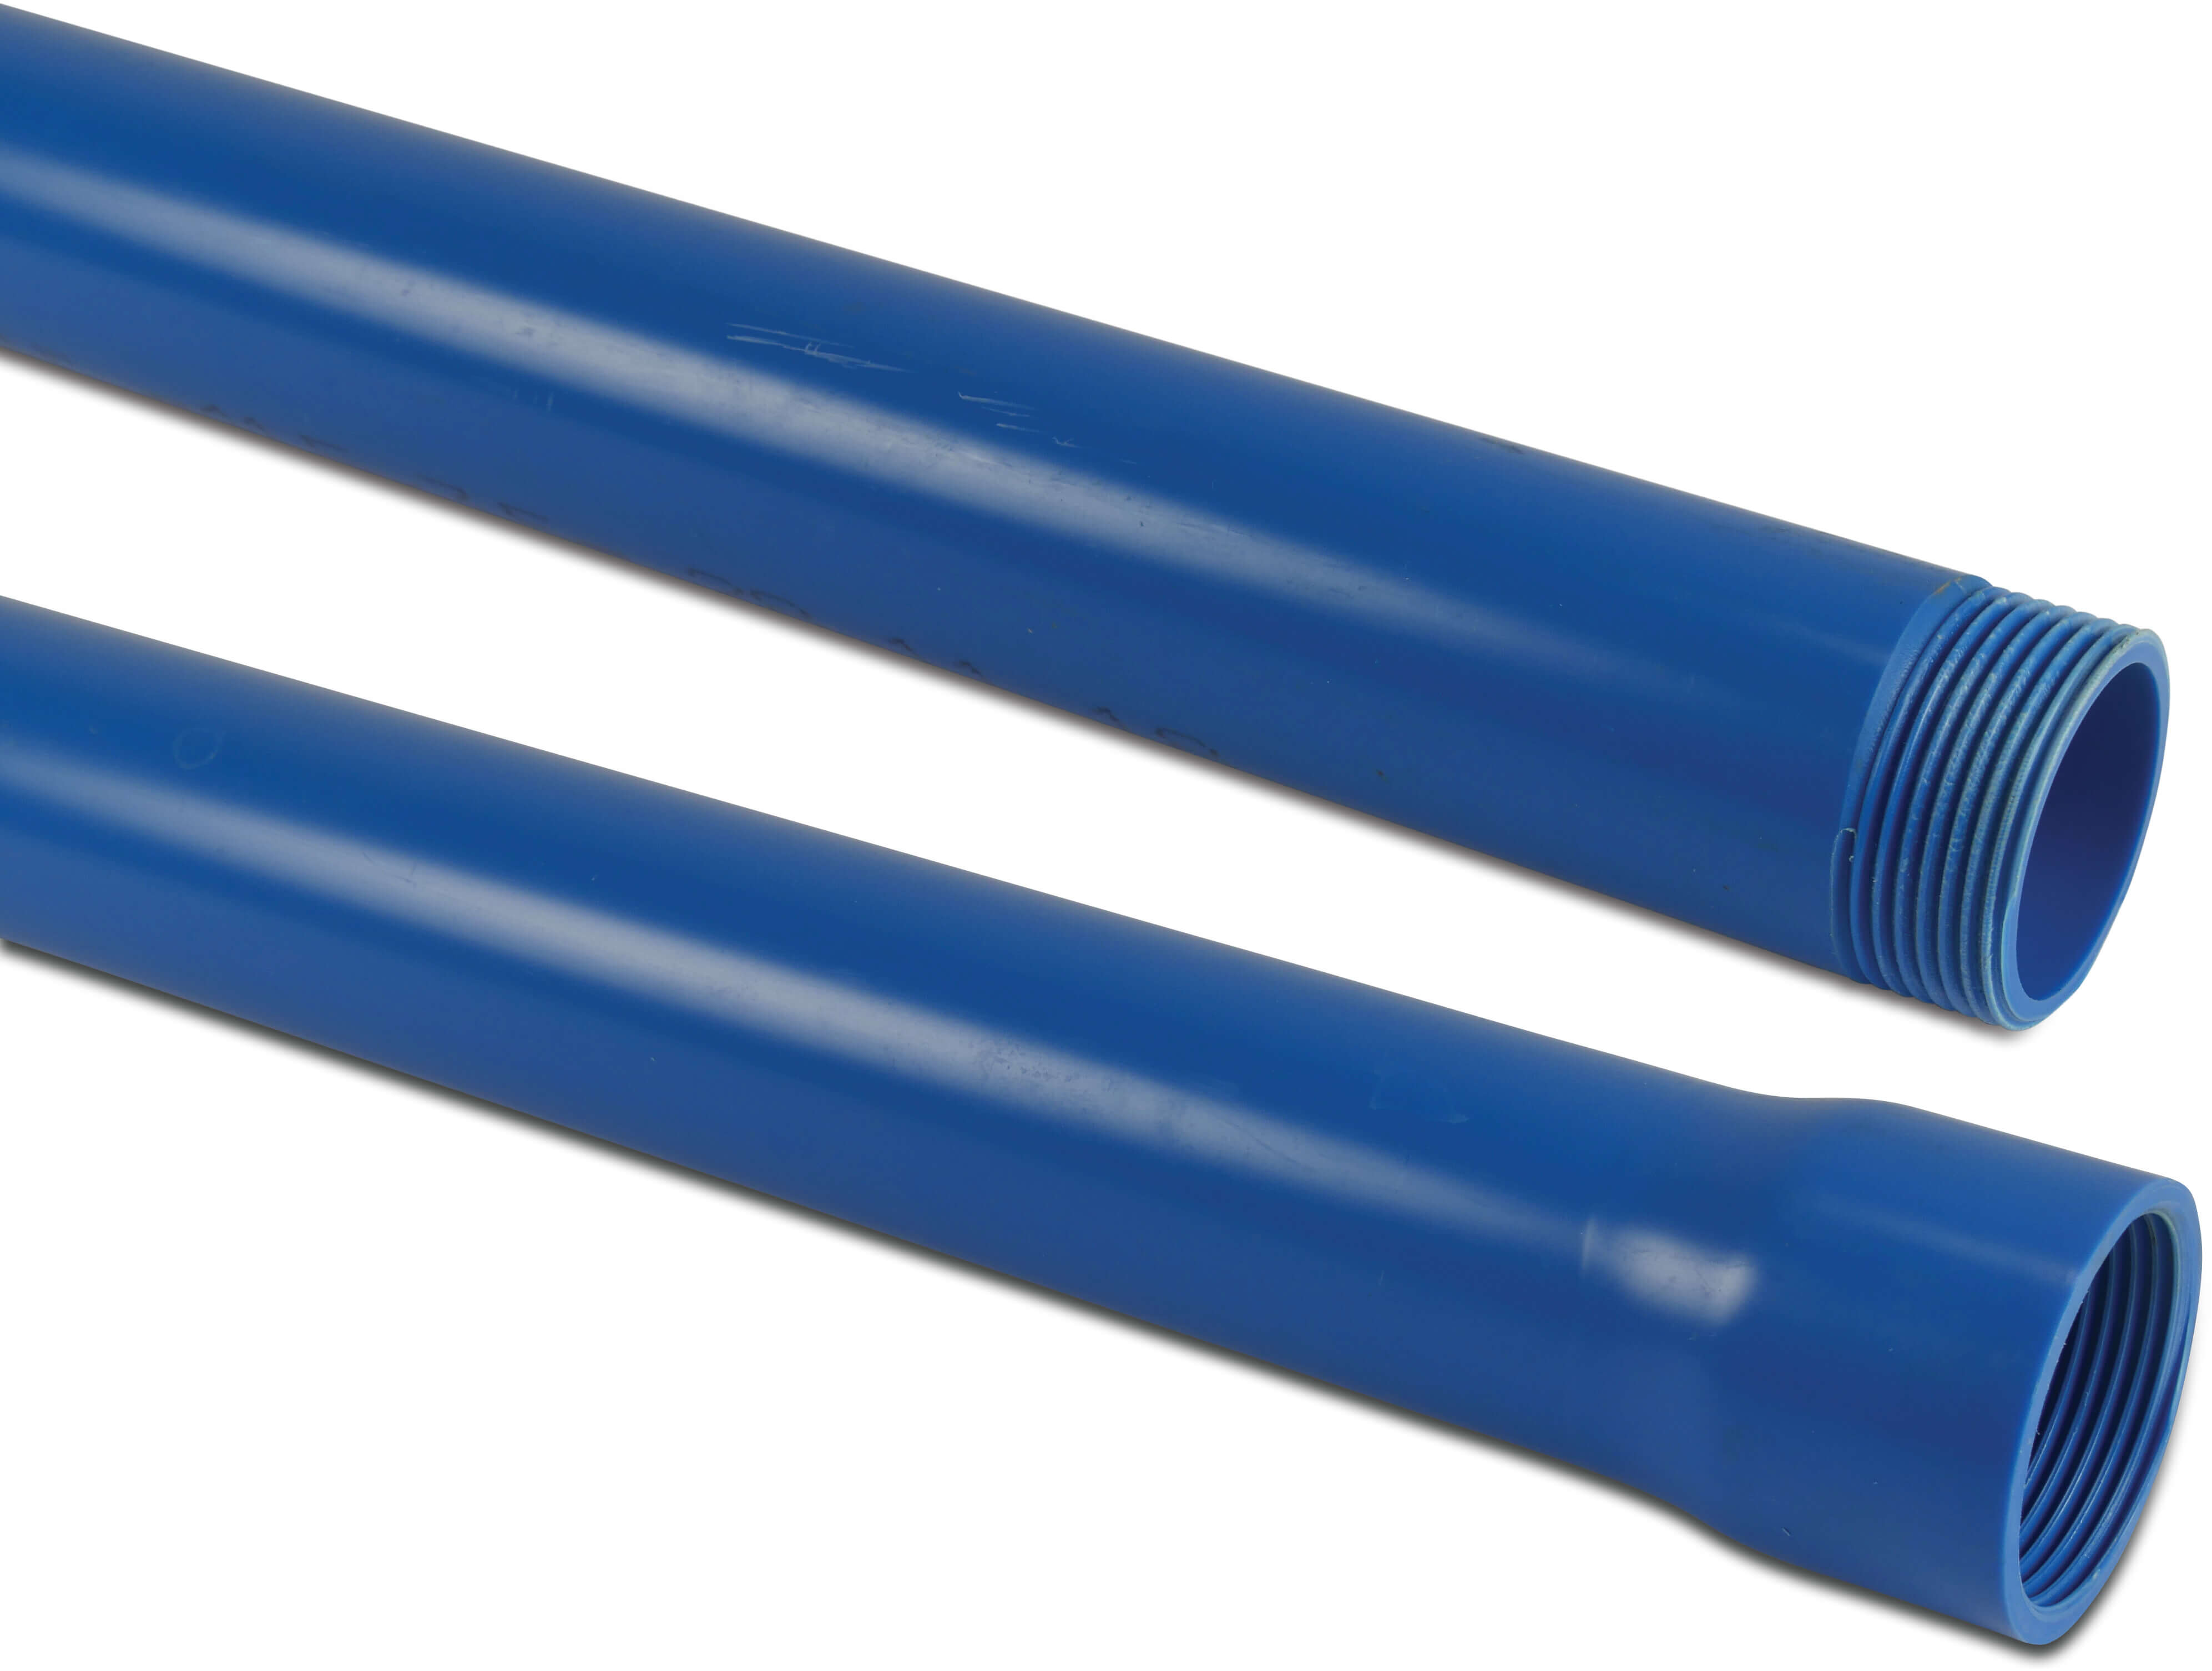 Förlängingsrör PVC-U 1 1/4" invändig gänga x utvändig gänga blå 2m